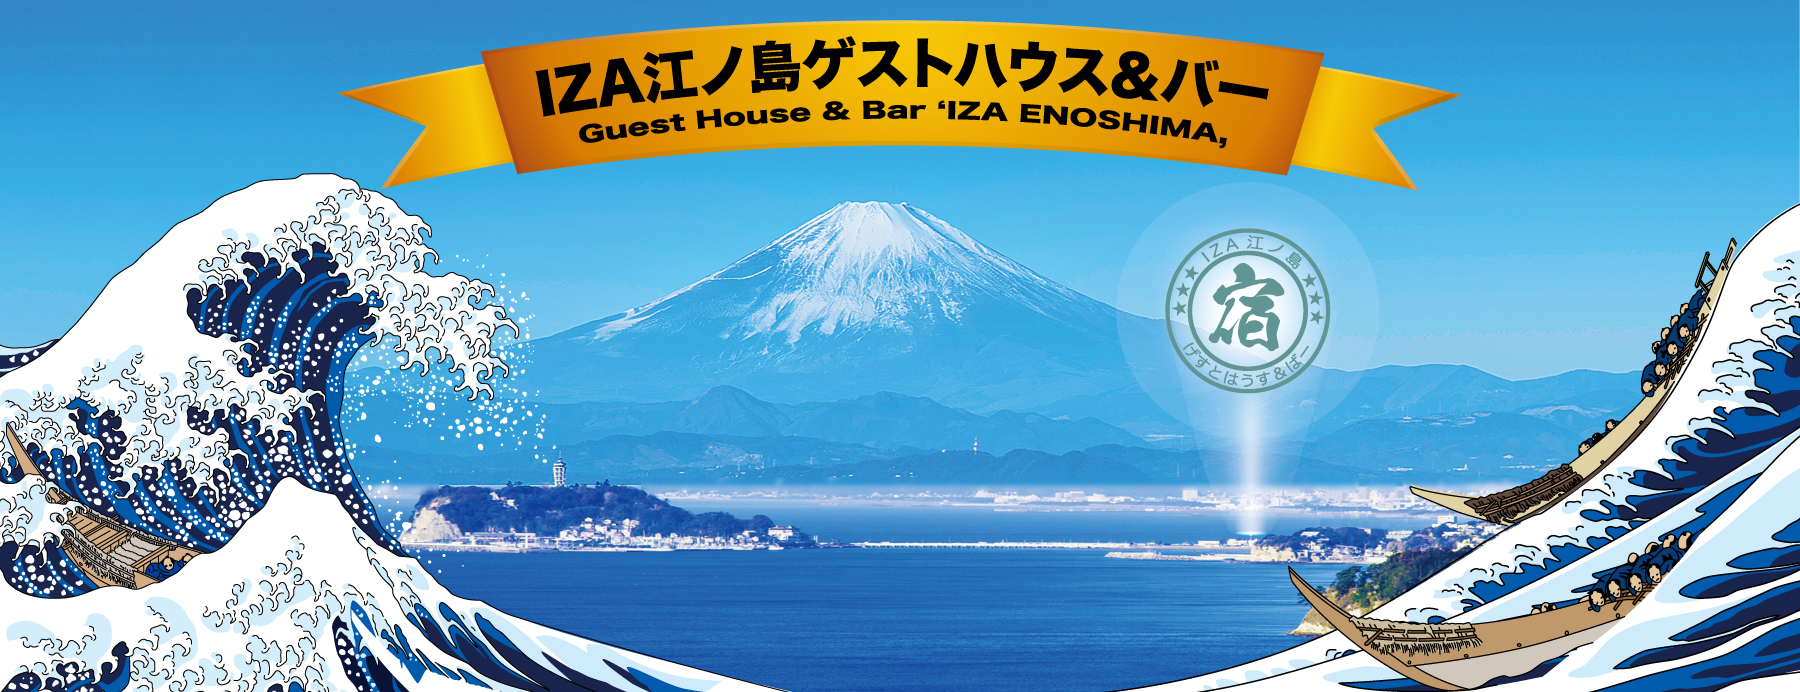 IZA Enoshima Guesthouse